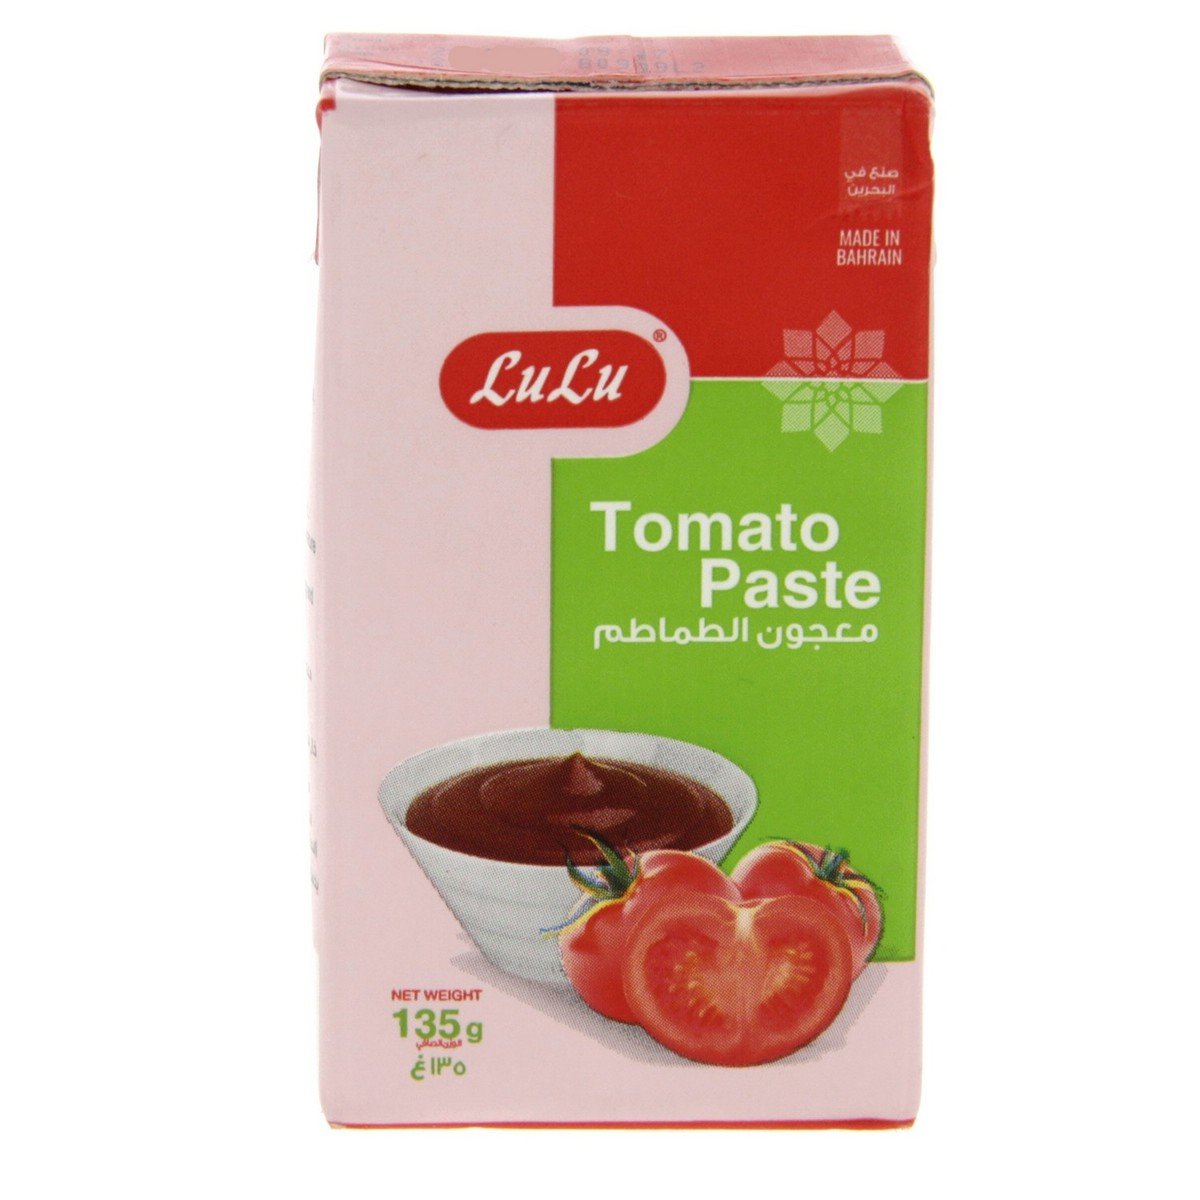 LuLu Tomato Paste 135 g